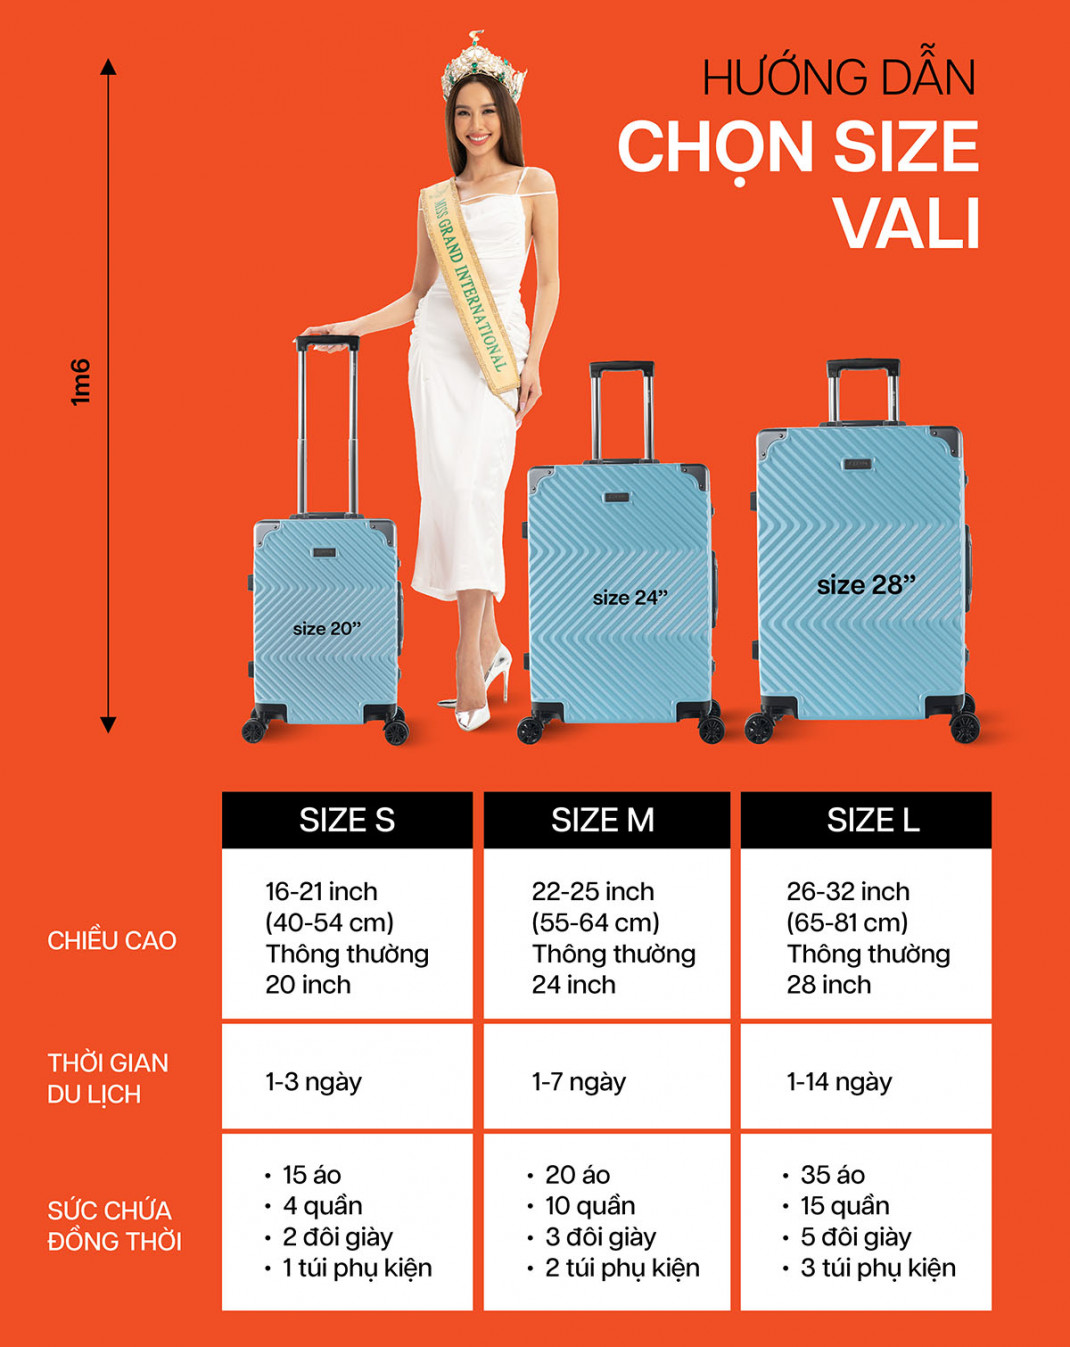 Giới thiệu về các loại size vali 3